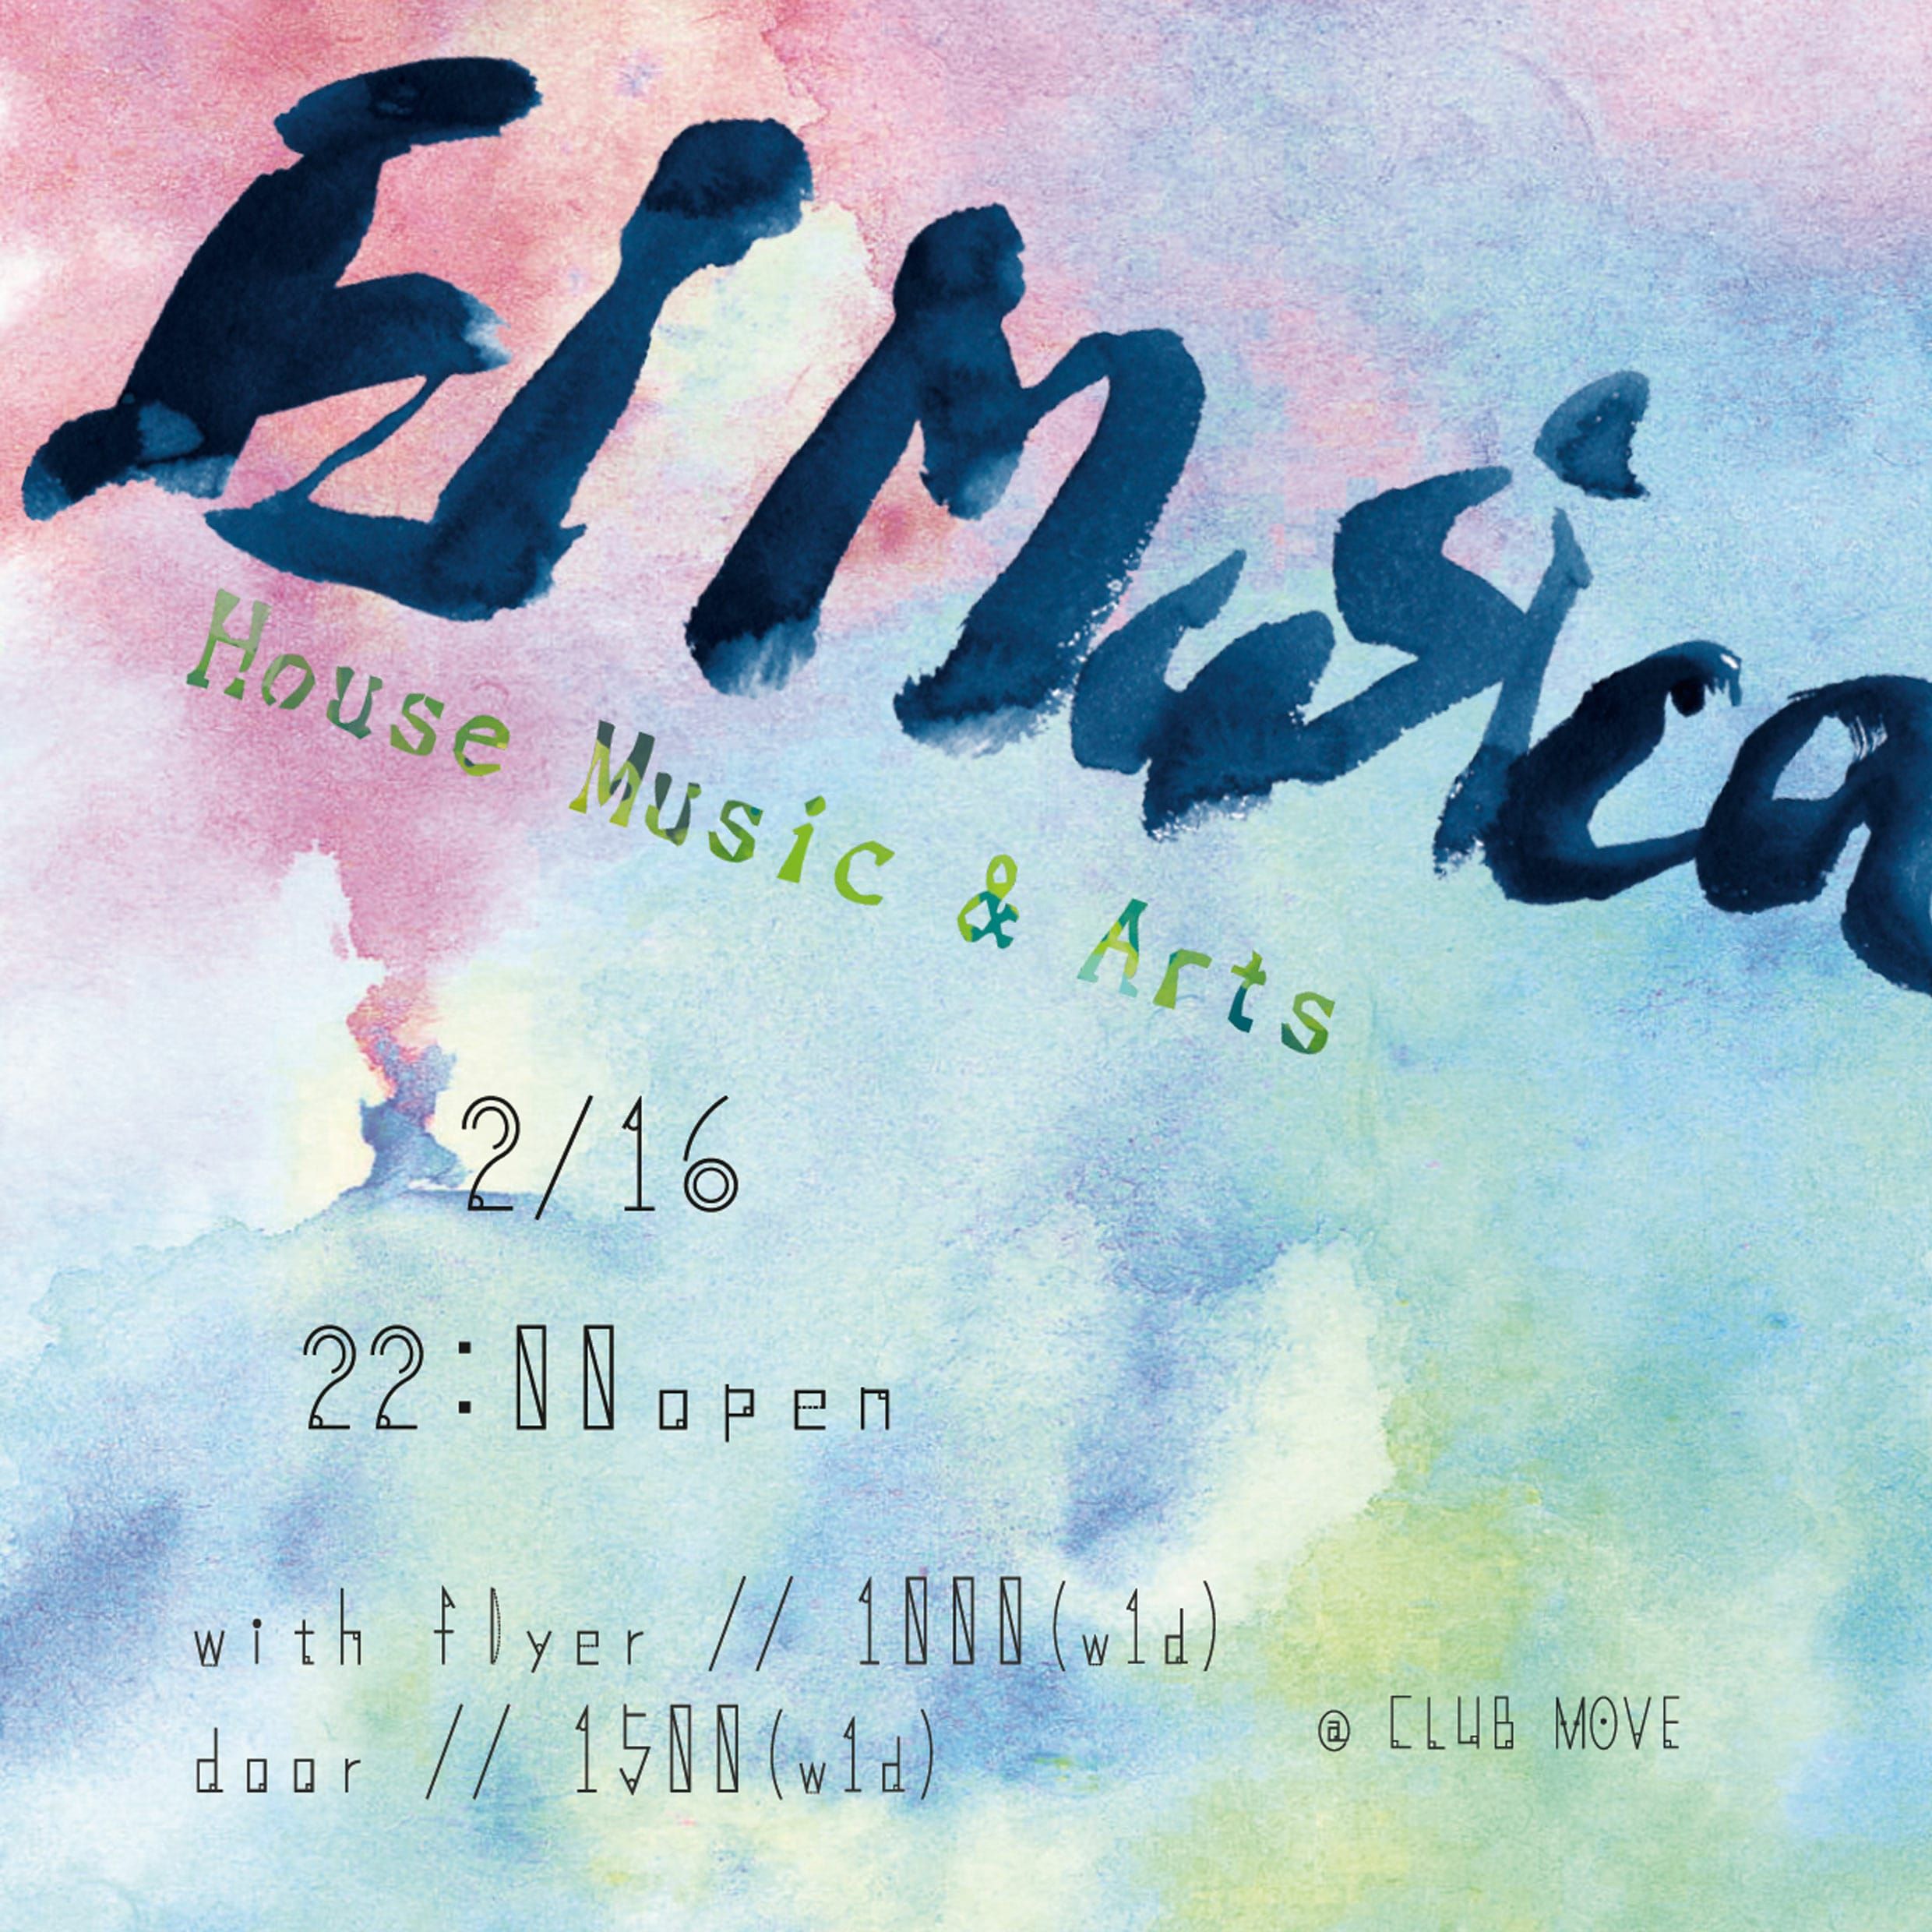 House & Exotic Music 『El Musica』